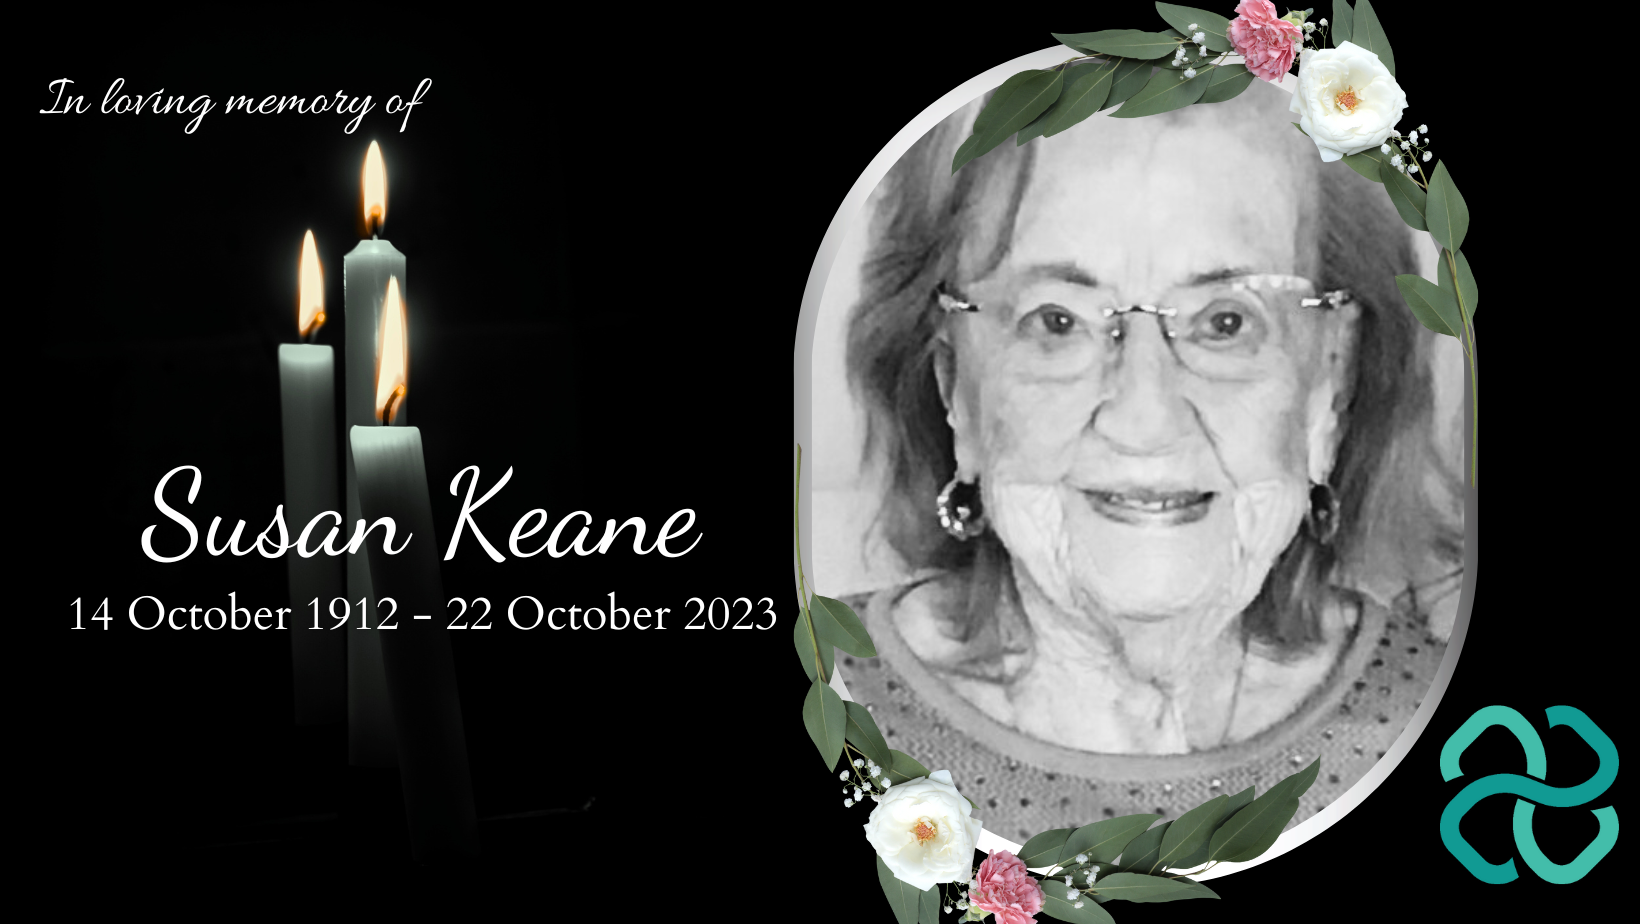 Susan Keane passed away at 111